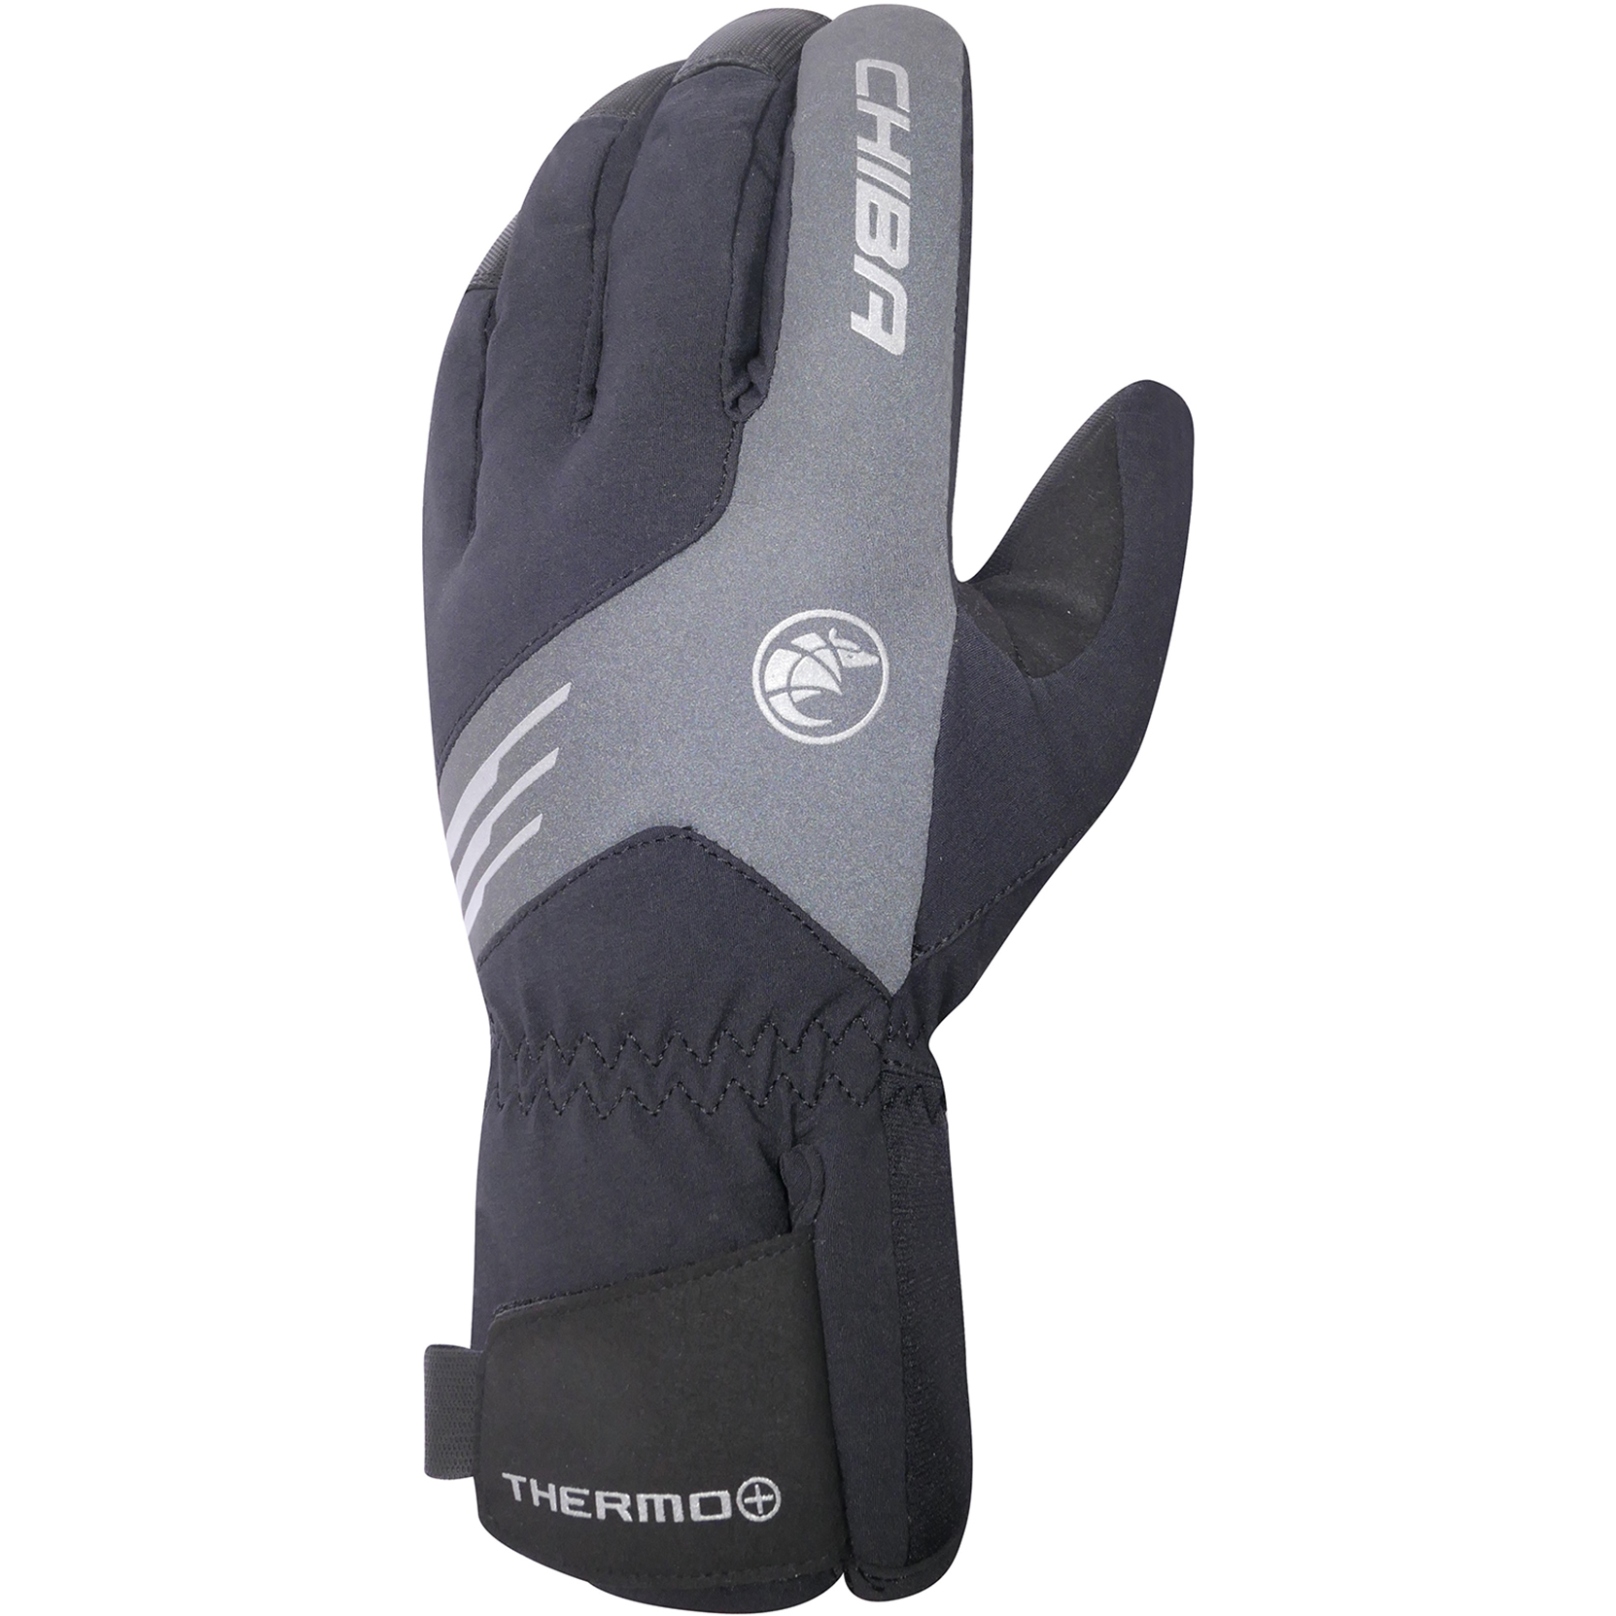 Productfoto van Chiba Thermo Plus Extra Warm Fietshandschoenen - zwart